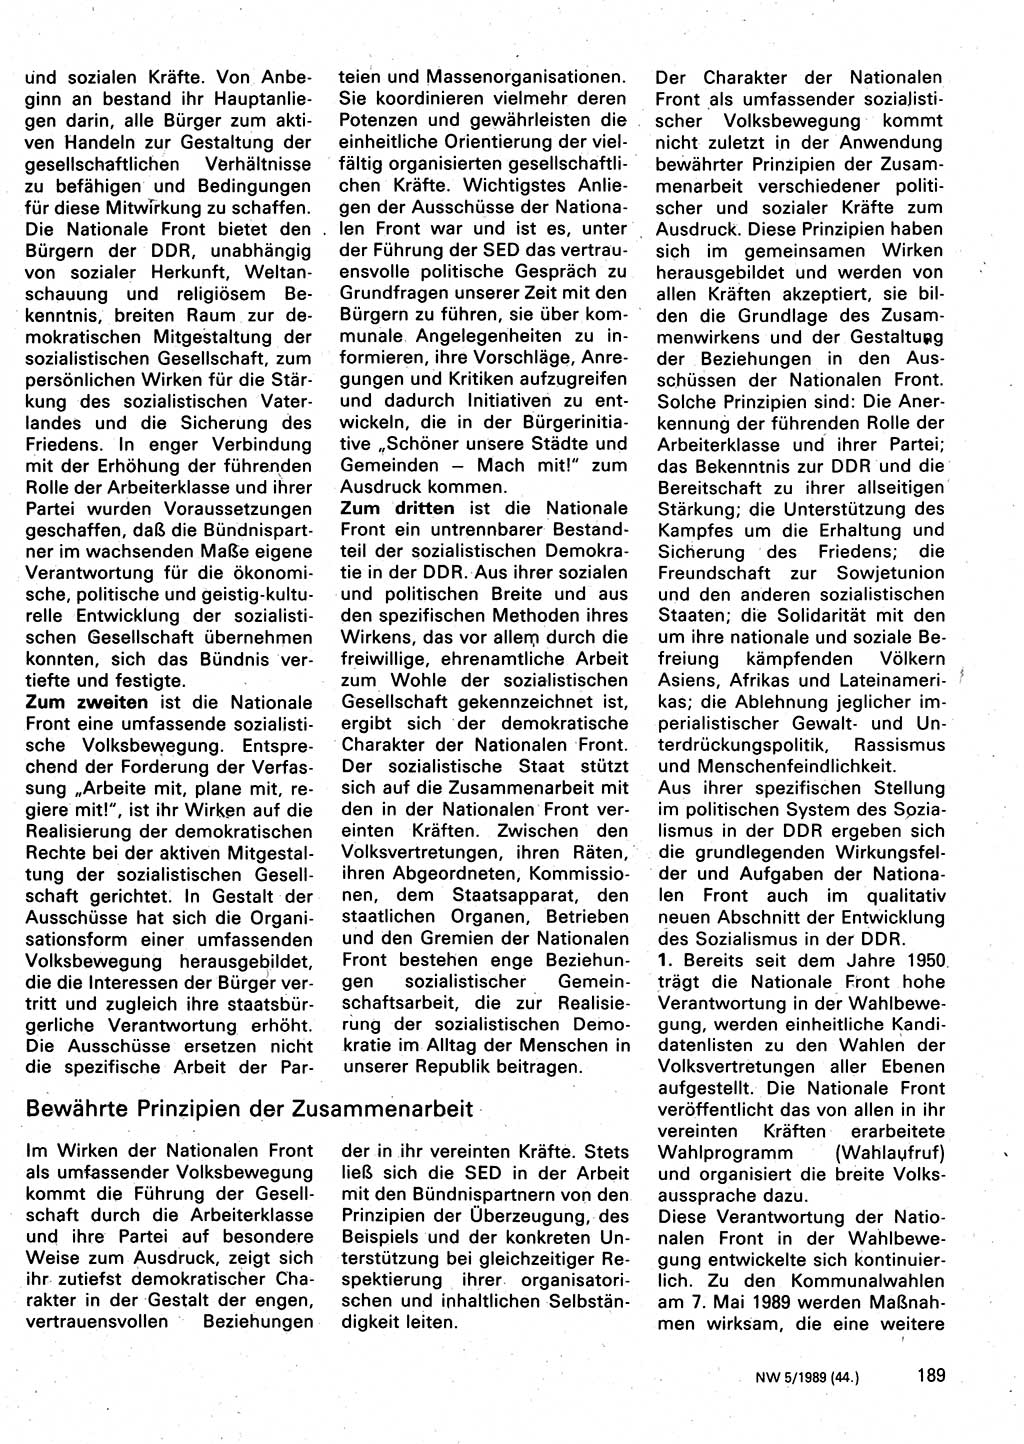 Neuer Weg (NW), Organ des Zentralkomitees (ZK) der SED (Sozialistische Einheitspartei Deutschlands) für Fragen des Parteilebens, 44. Jahrgang [Deutsche Demokratische Republik (DDR)] 1989, Seite 189 (NW ZK SED DDR 1989, S. 189)